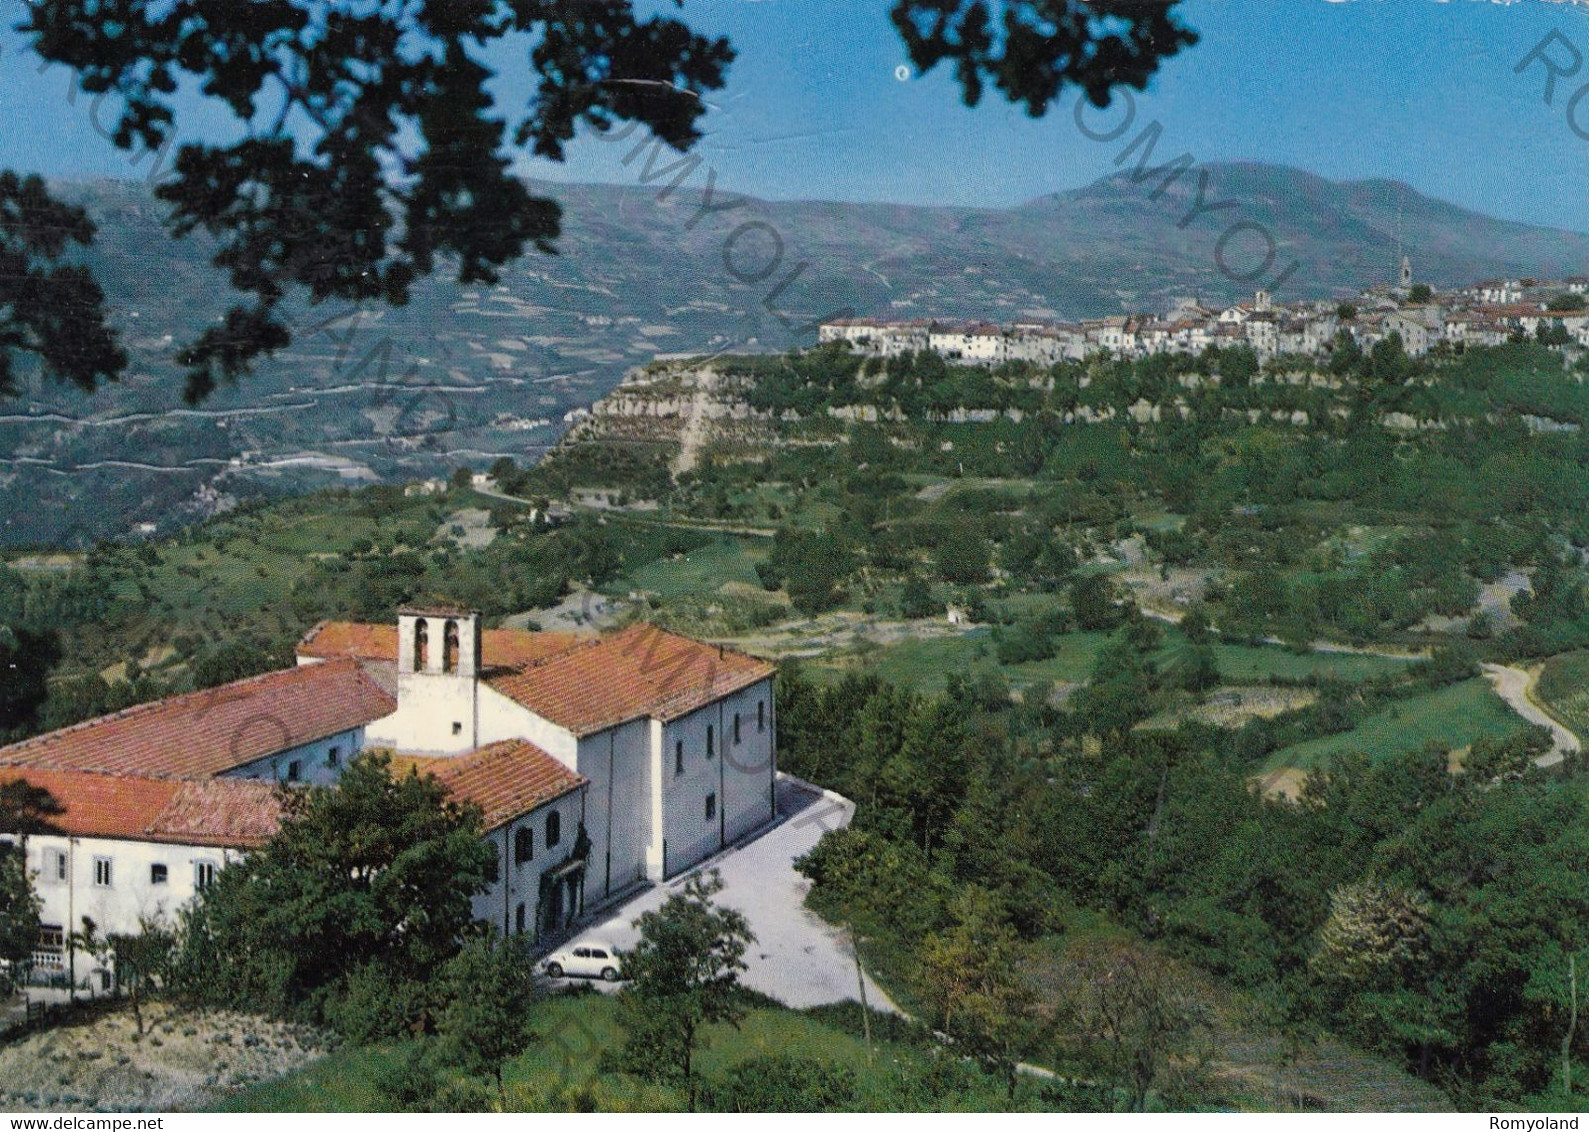 CARTOLINA  AGNONE M.800,ISERNIA,MOLISE,PANORAMA DEL COLLEGIO,PANORAMA,STORIA,RELIGIONE,CULTURA,BELLA ITALIA,VIAGG 1981 - Isernia